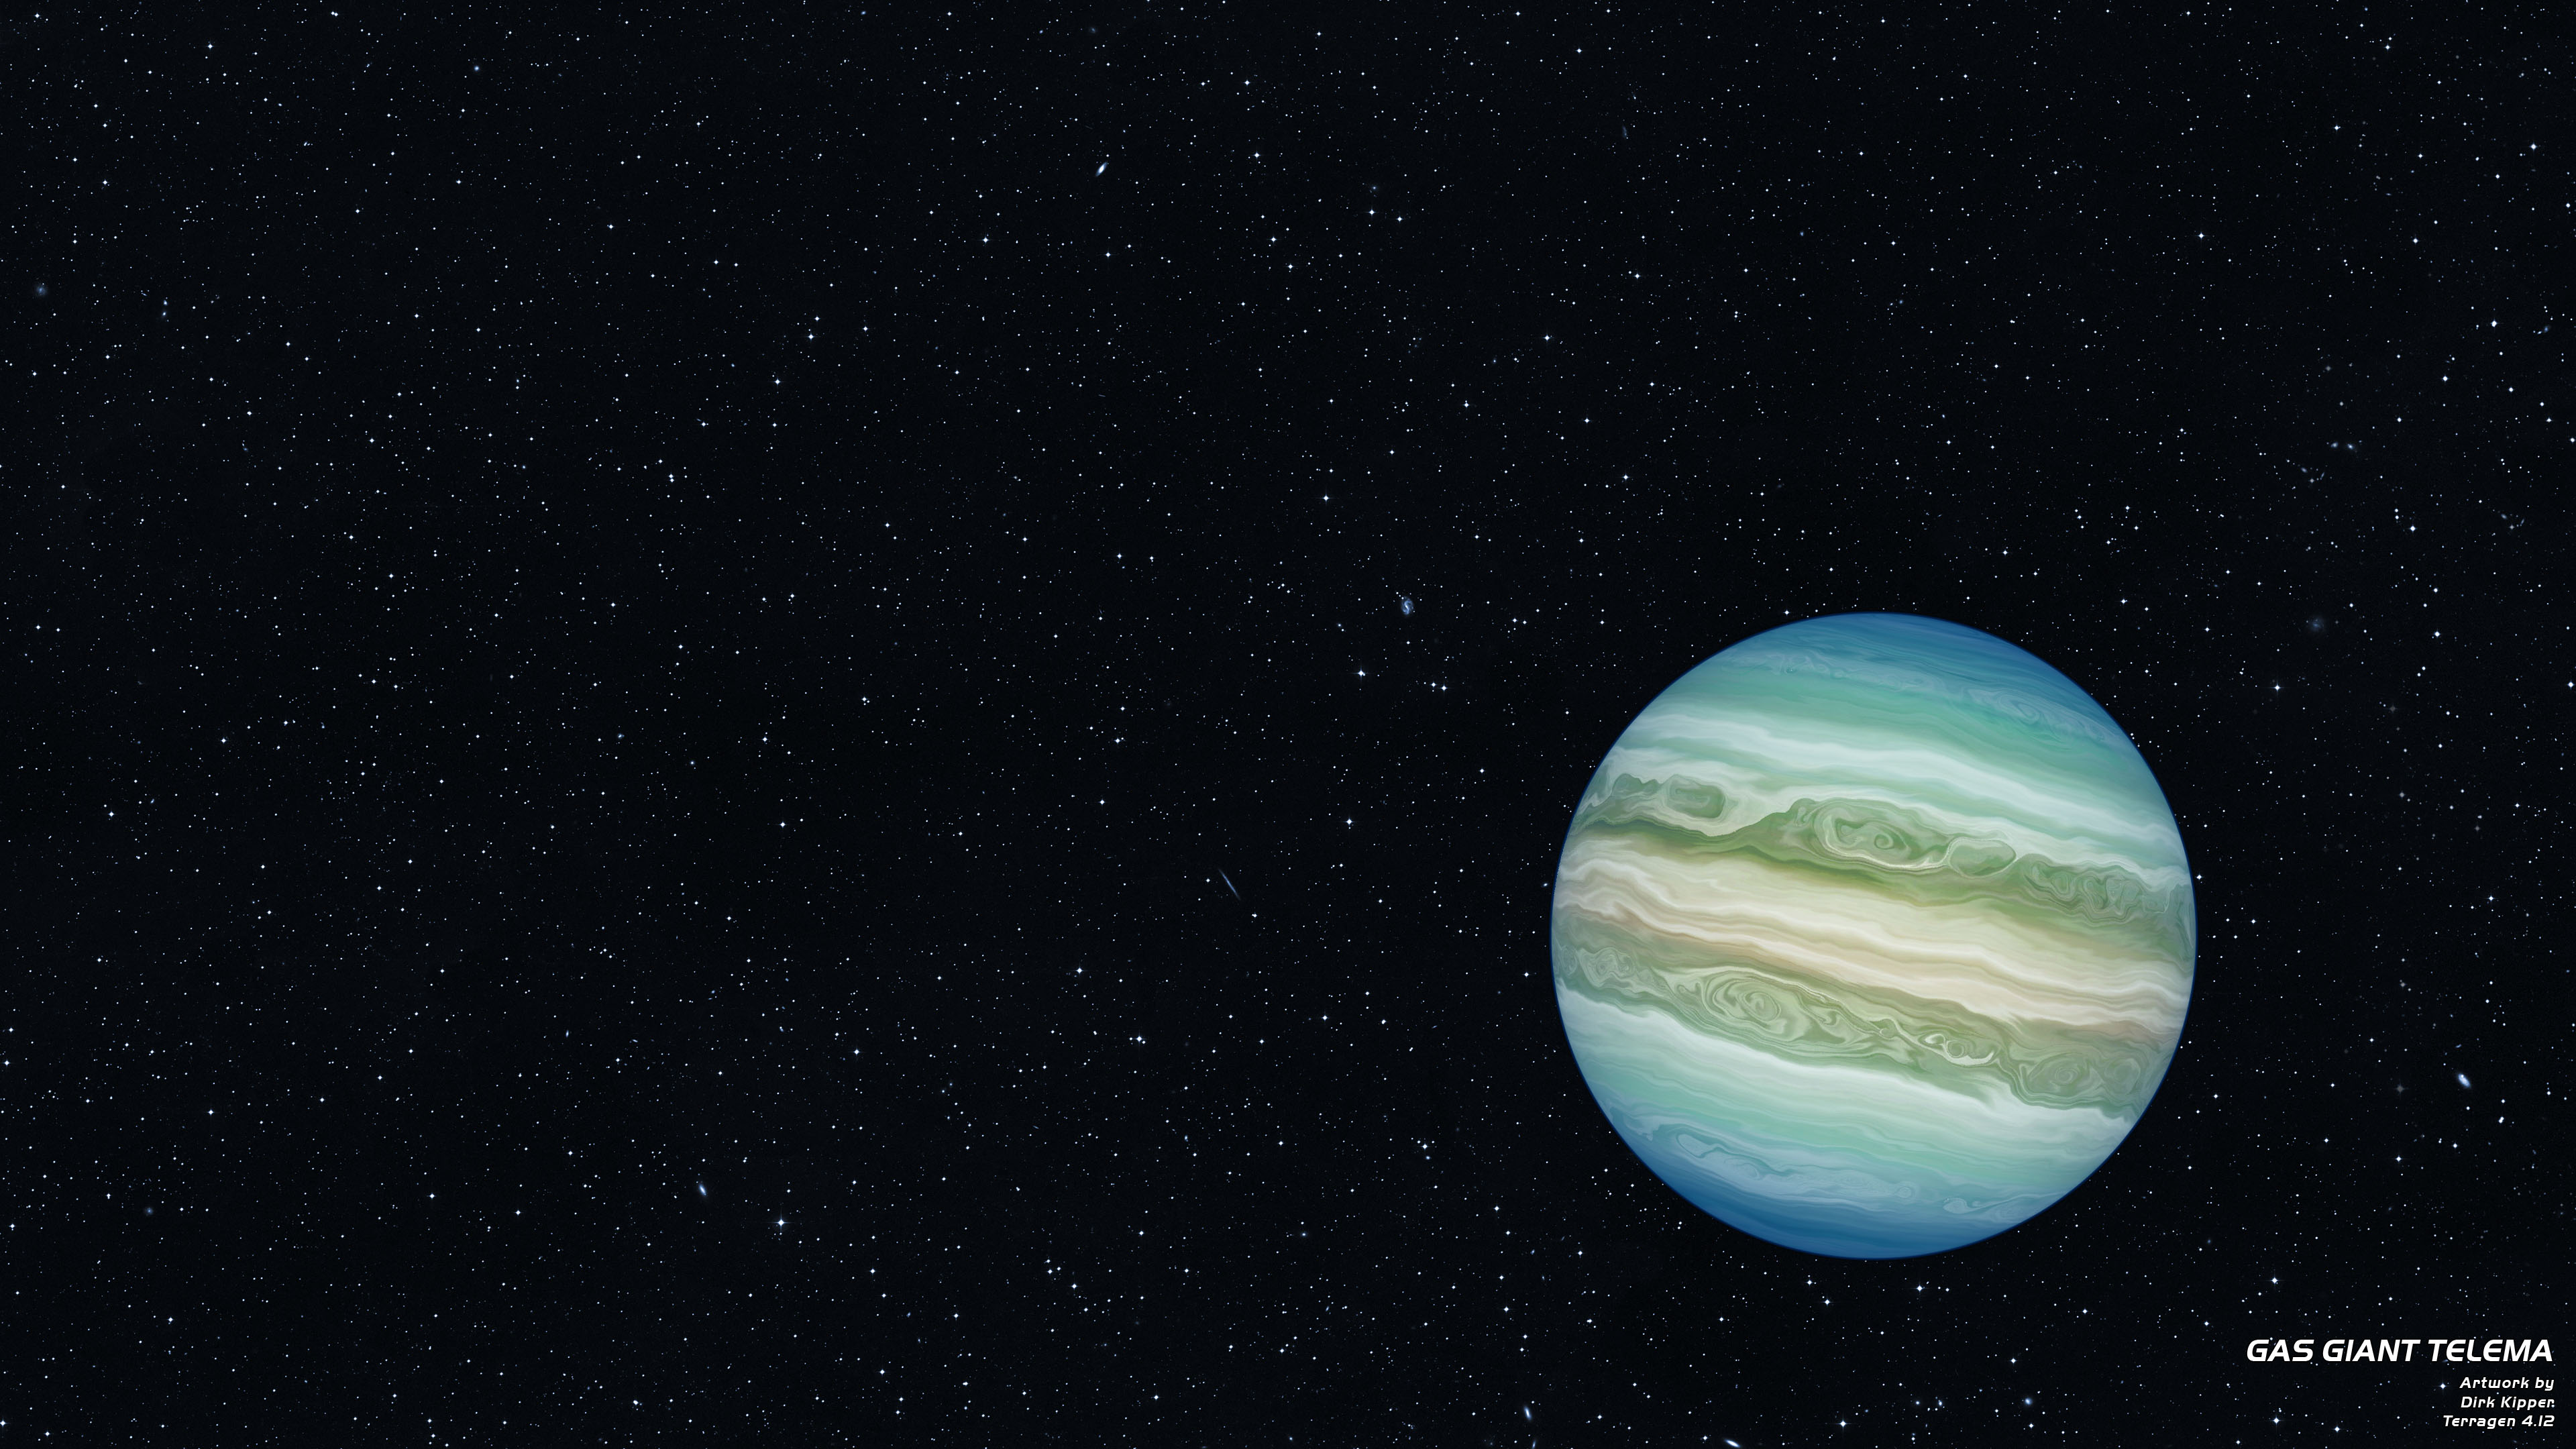 Sci-Fi Gas Planet by Dirk Kipper.jpg